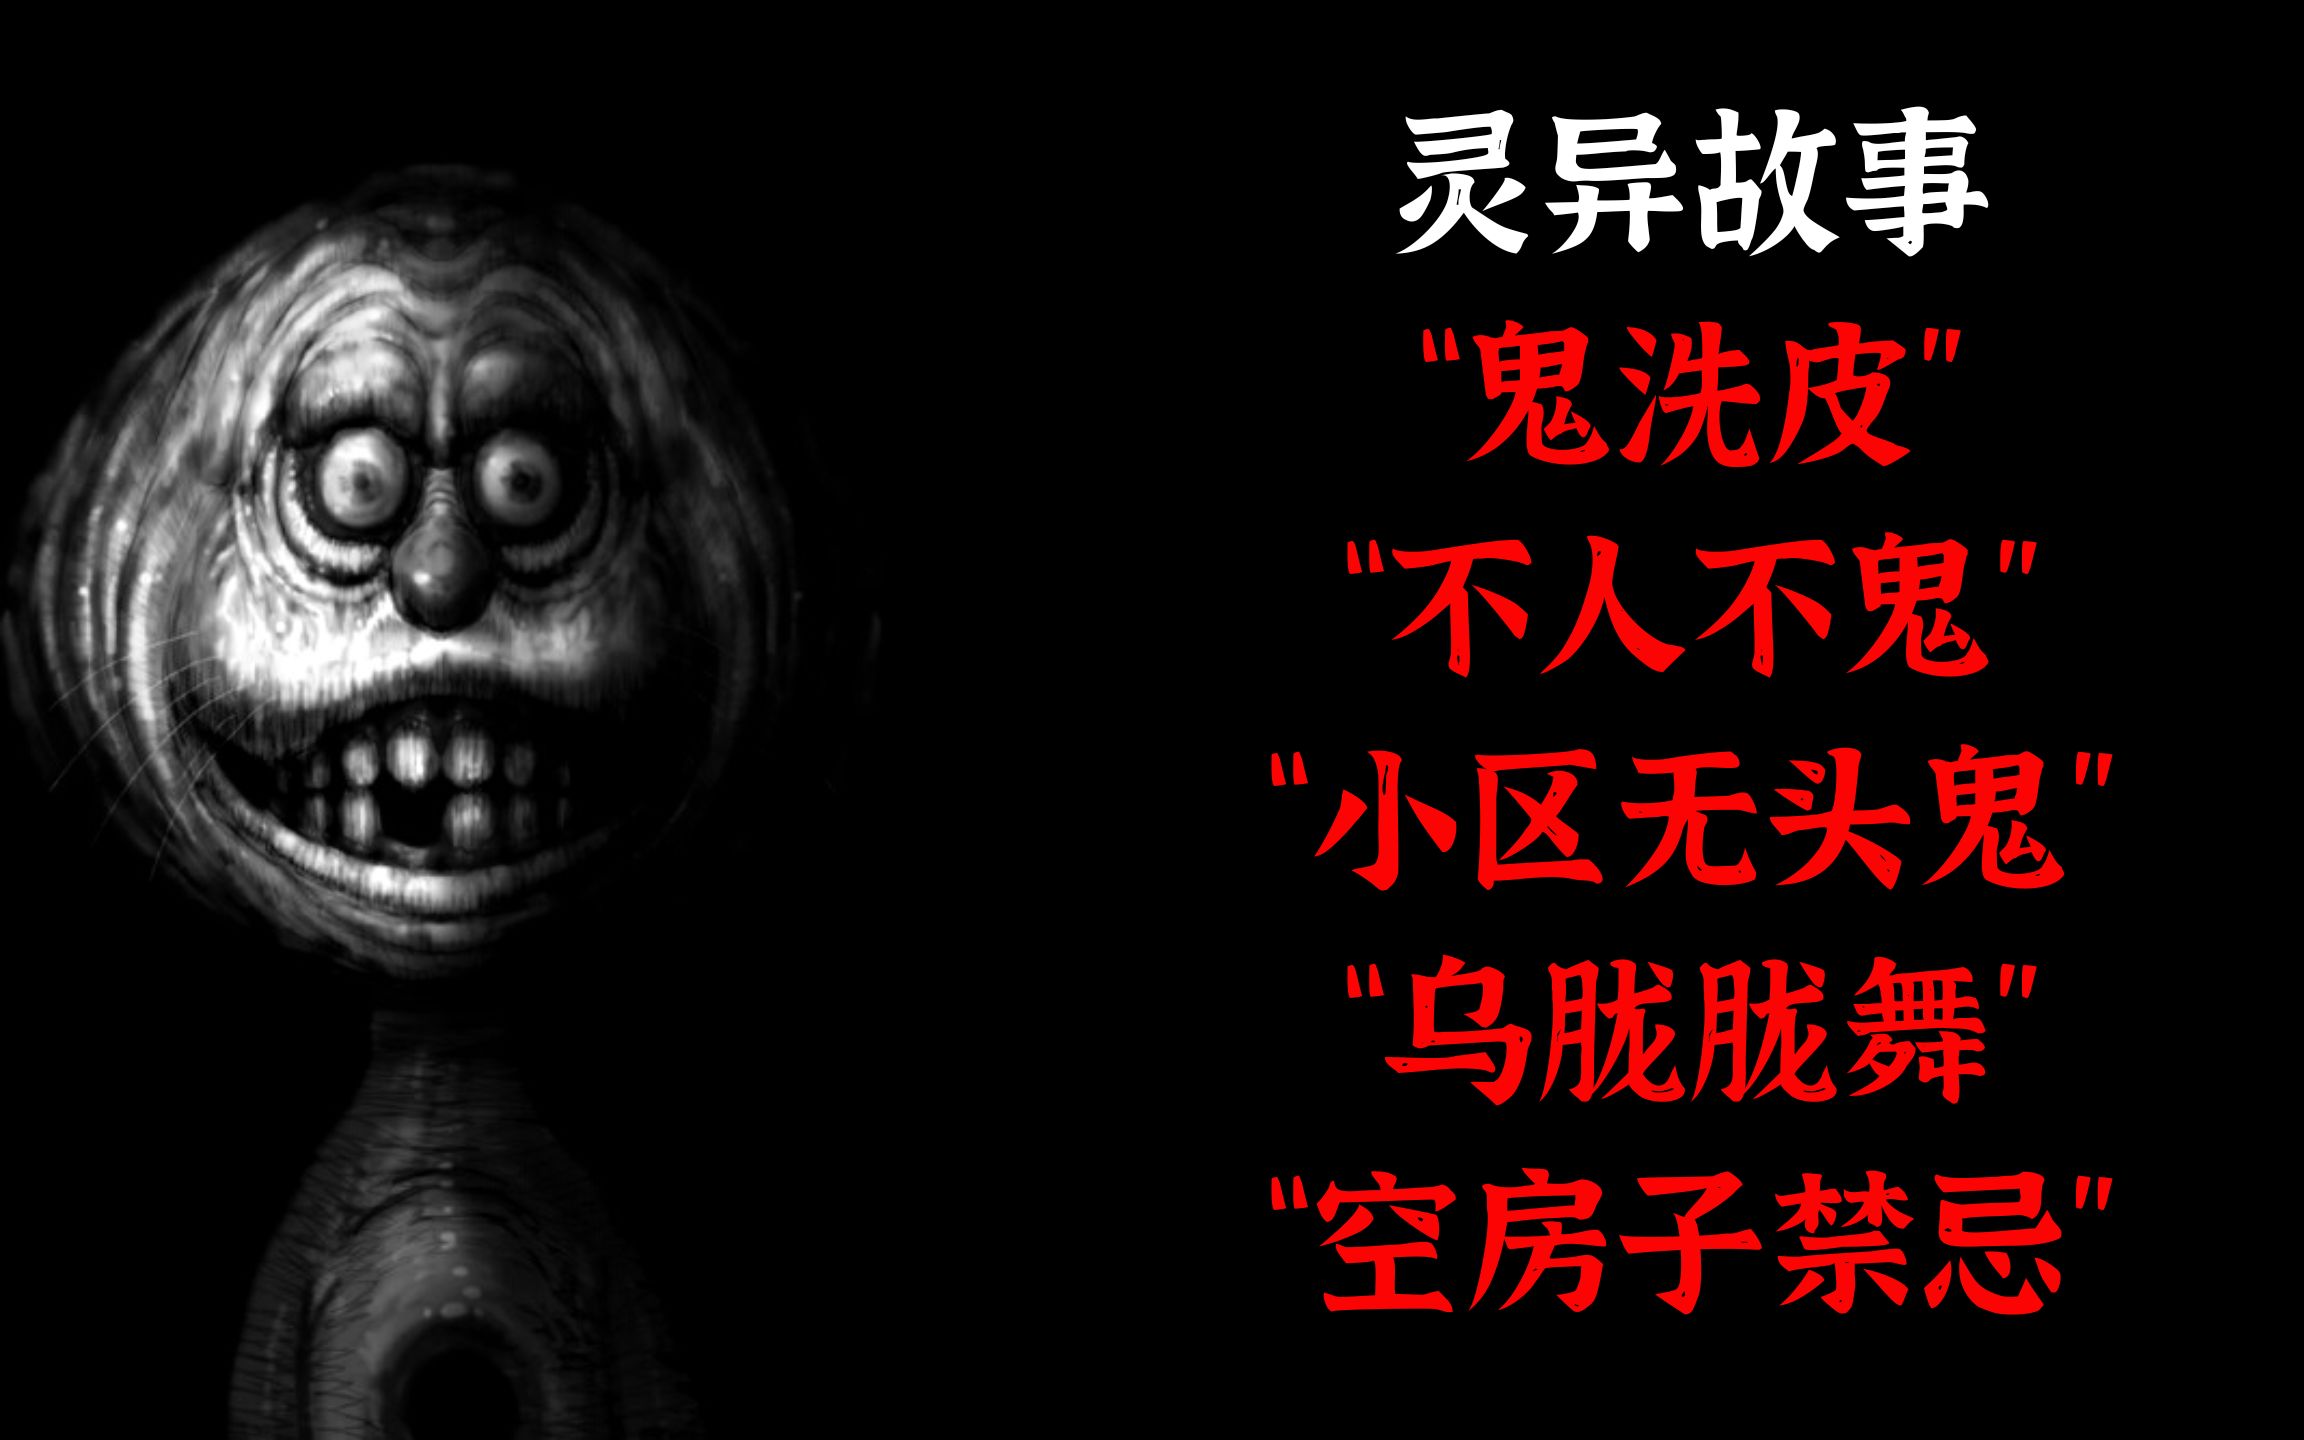 日本电视直播, 却意外拍摄到恐怖女鬼头? 6个日本真实发生的恐怖鬼视频_哔哩哔哩_bilibili